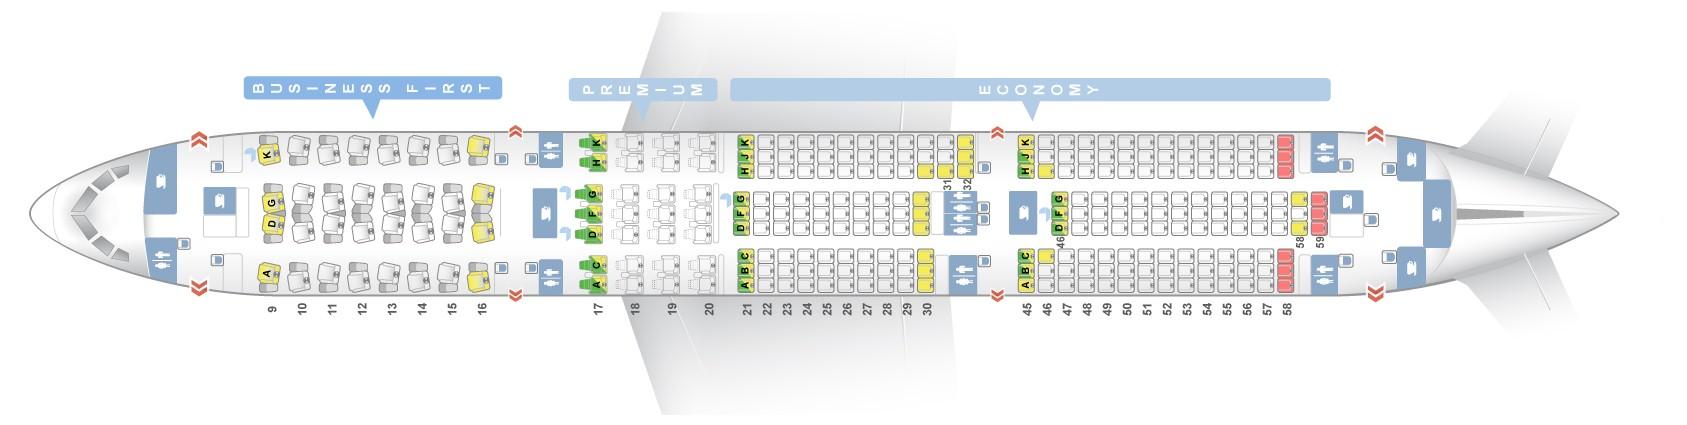 Seat Map Boeing 787 9 Dreamliner El Al Best Seats In The Plane